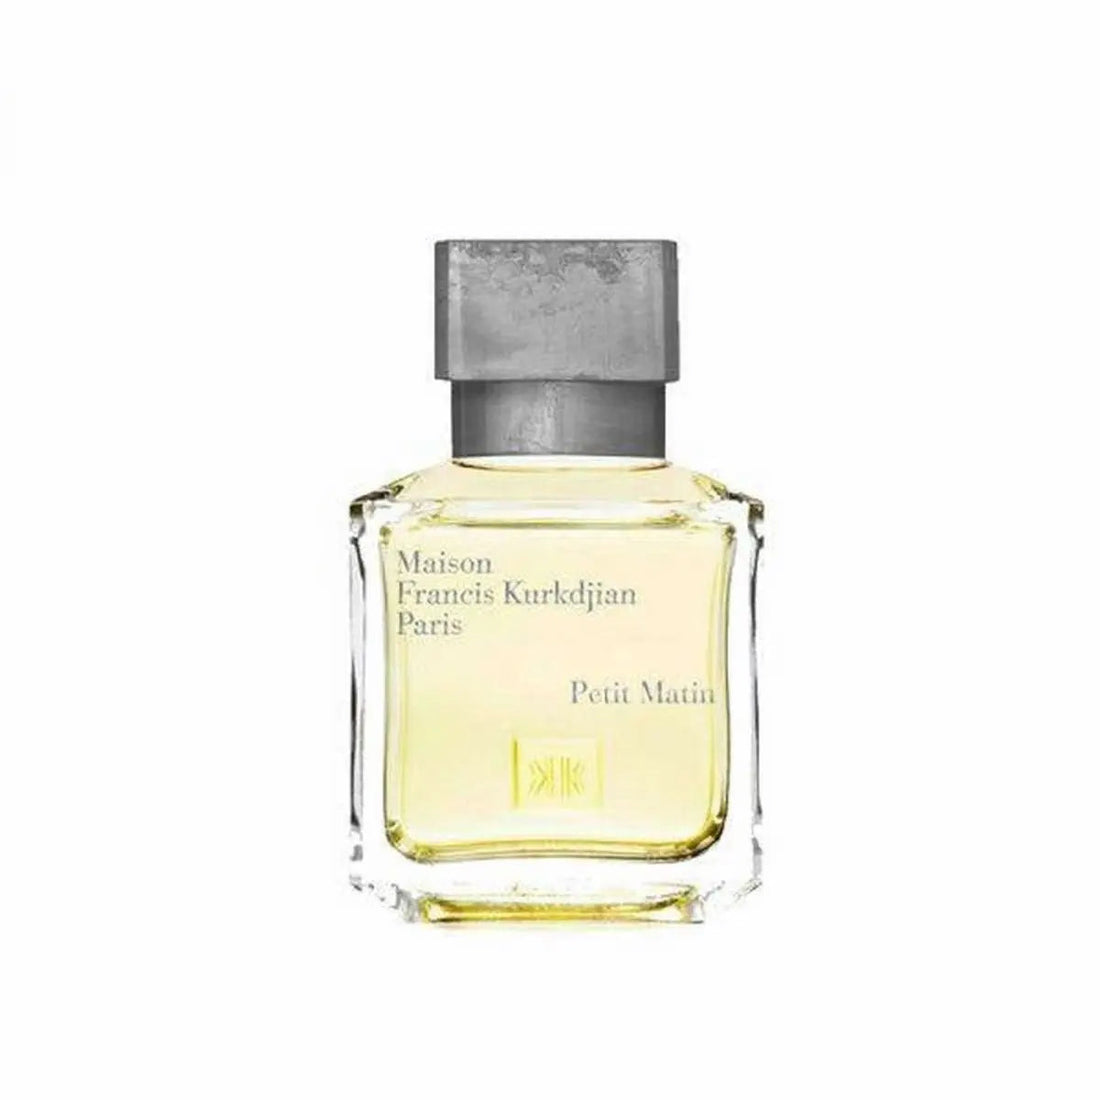 Maison francis kurkdjian Francis Kurkdjian Petit Matin Eau de Parfum – 200 ml